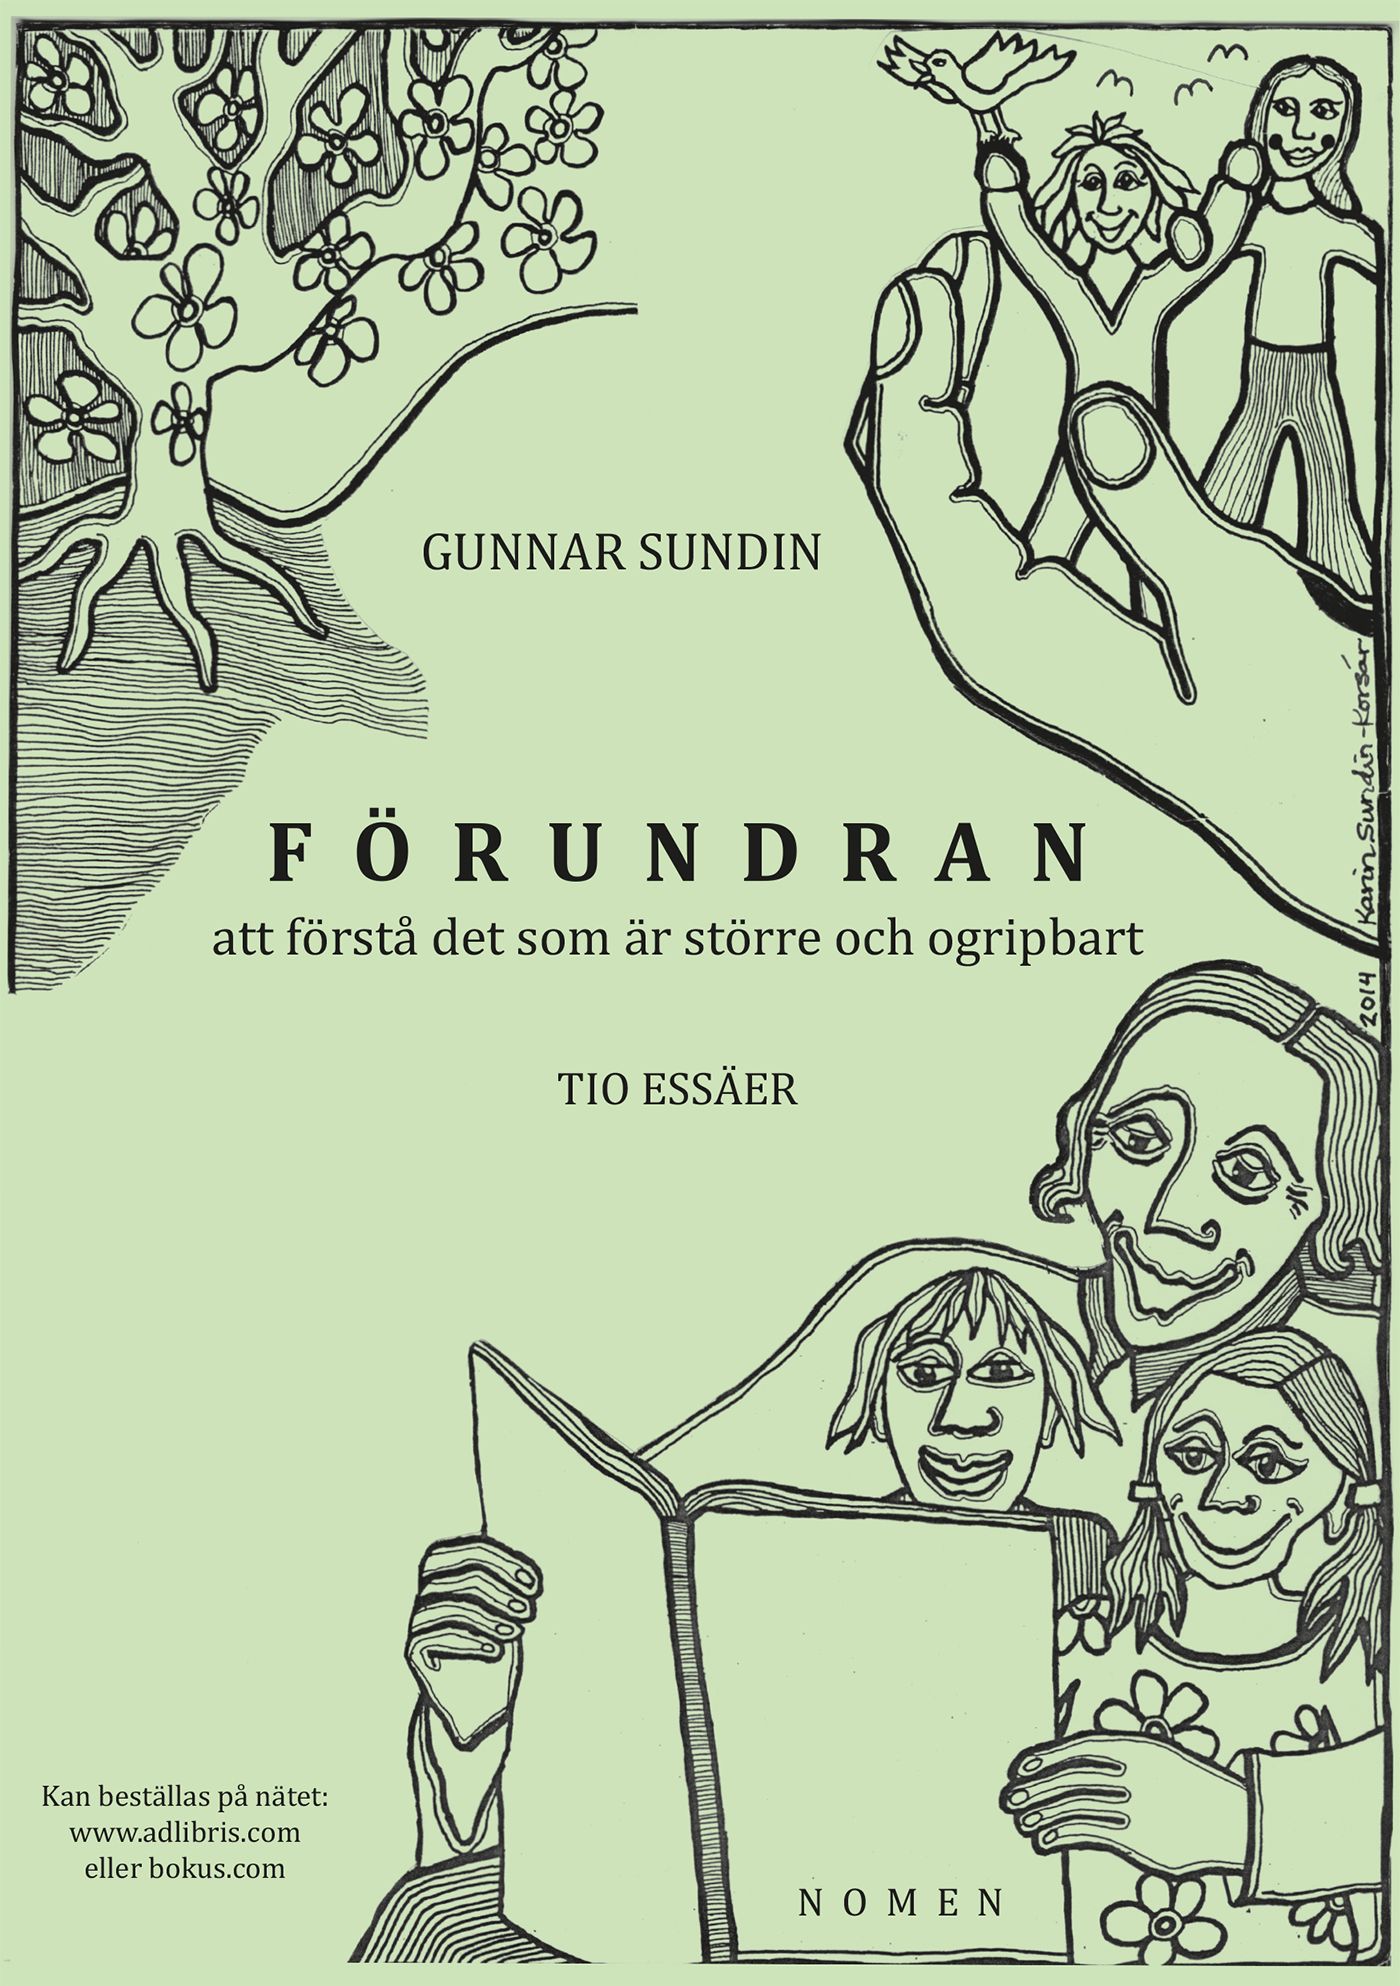 FÖRUNDRAN att förstå det som är större och ogripbart, e-bok av Gunnar Sundin